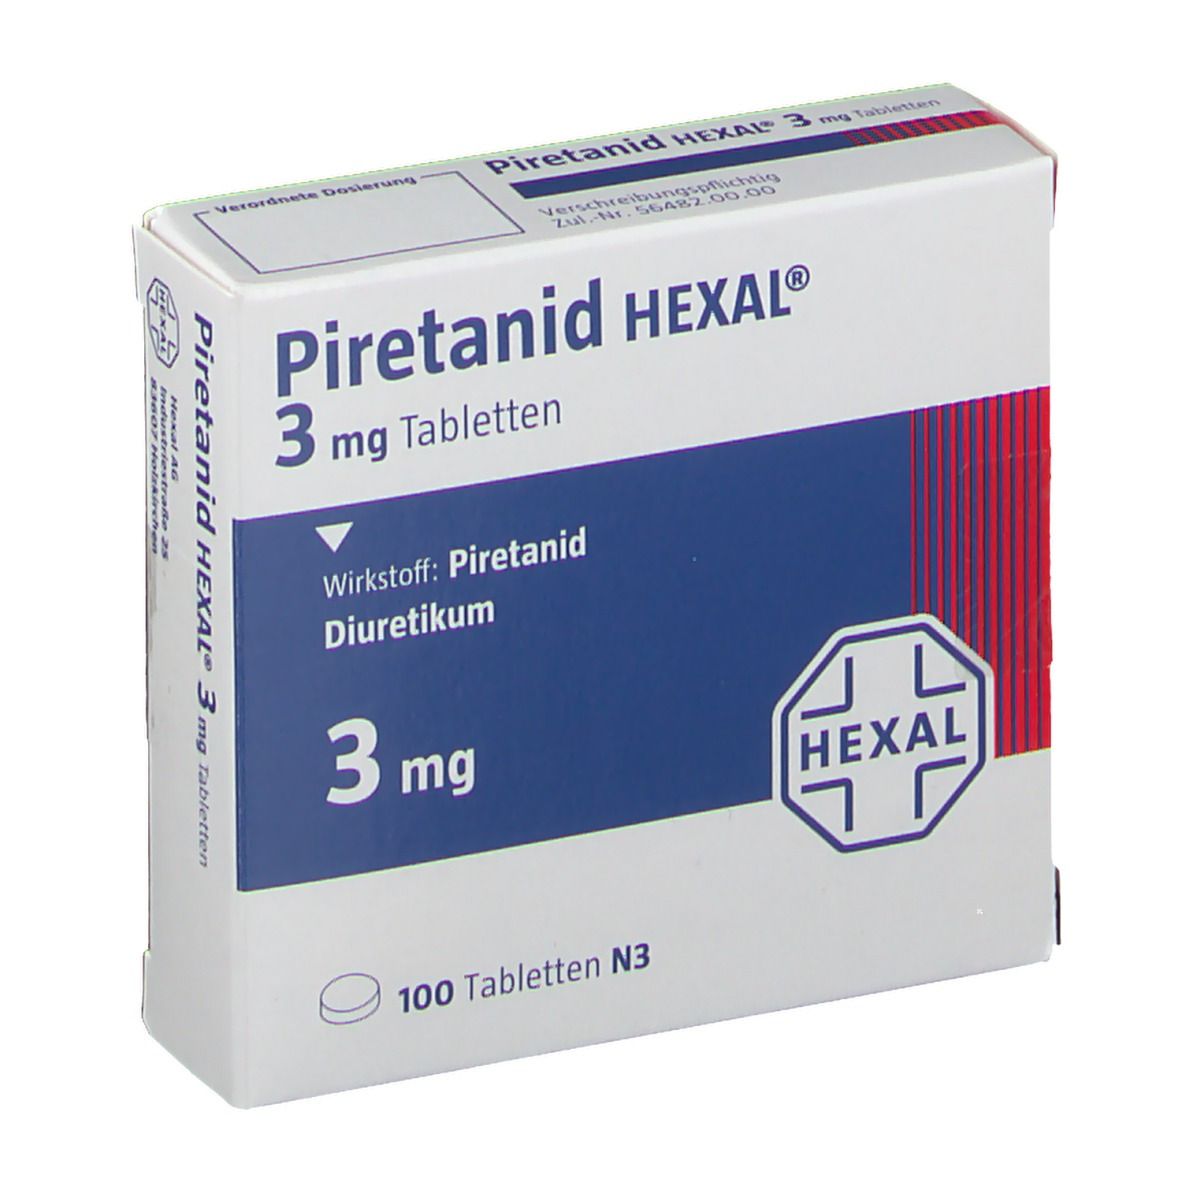 Piretanid HEXAL® 3 mg